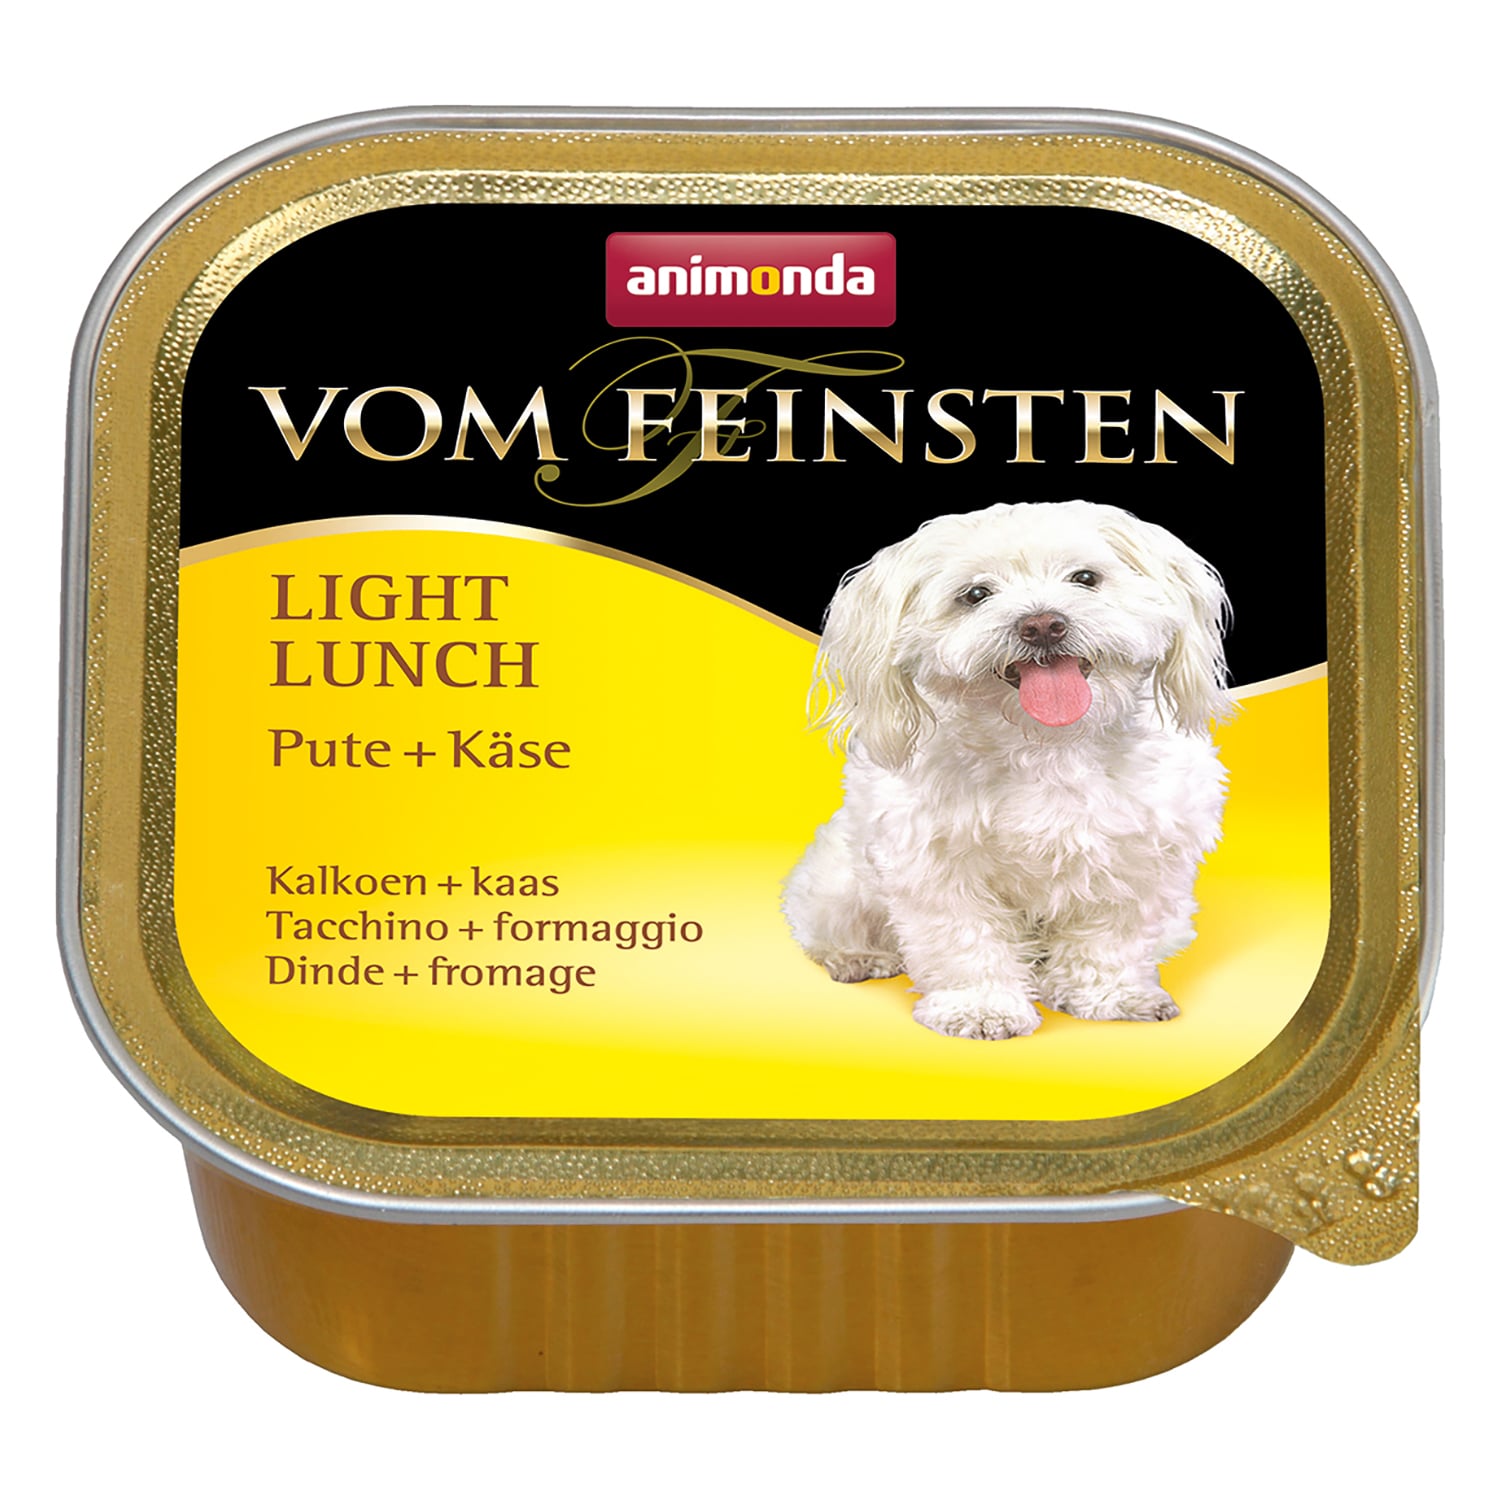 Vom Feinsten Light Lunch консервы для собак, облегченное меню с индейкой и сыром, Animonda